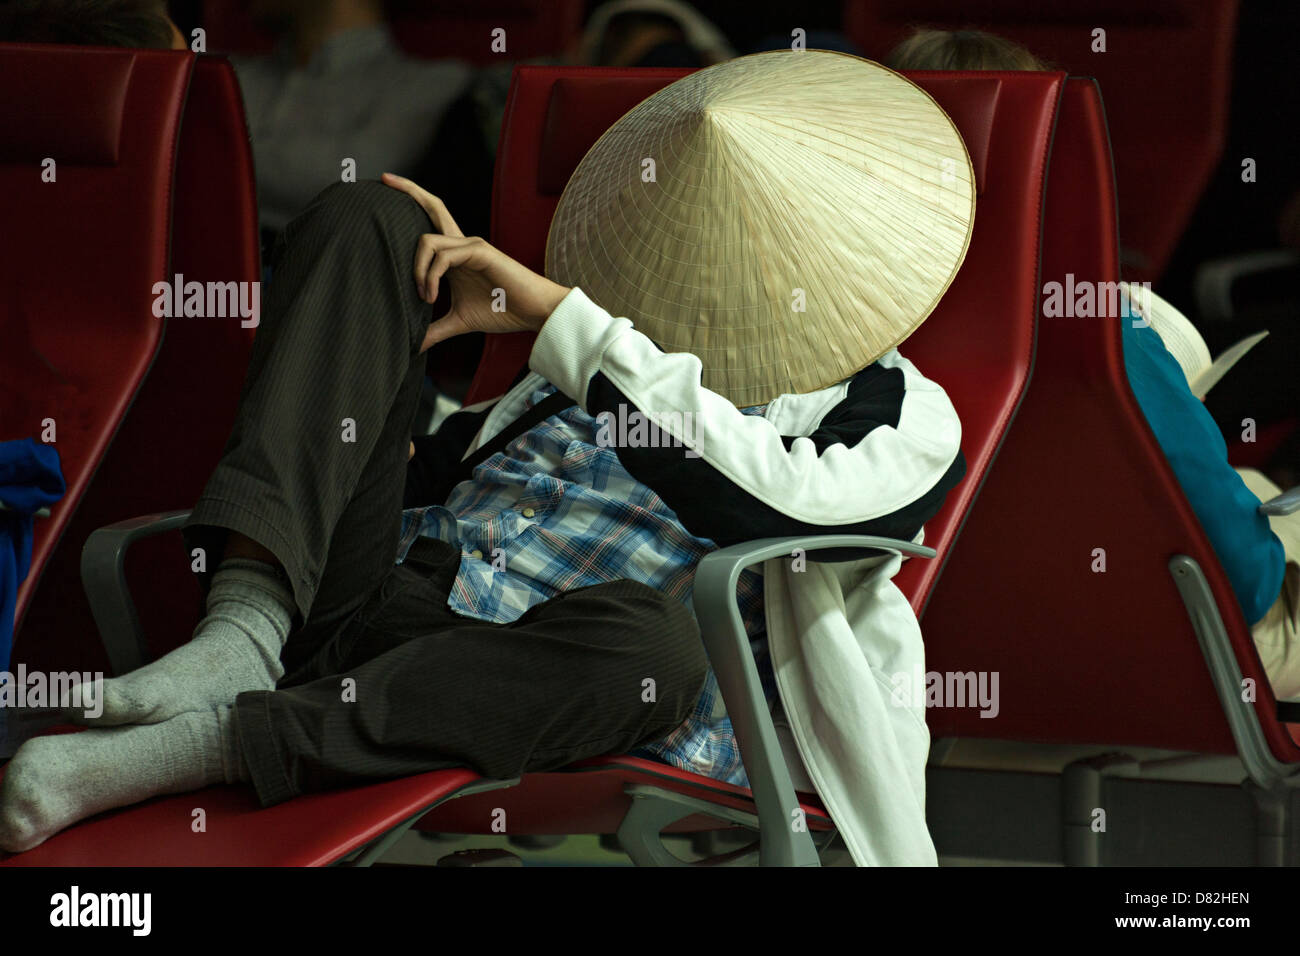 Homme portant un chapeau de bambou asiatique pendant le sommeil, Dubai International Airport Terminal Banque D'Images